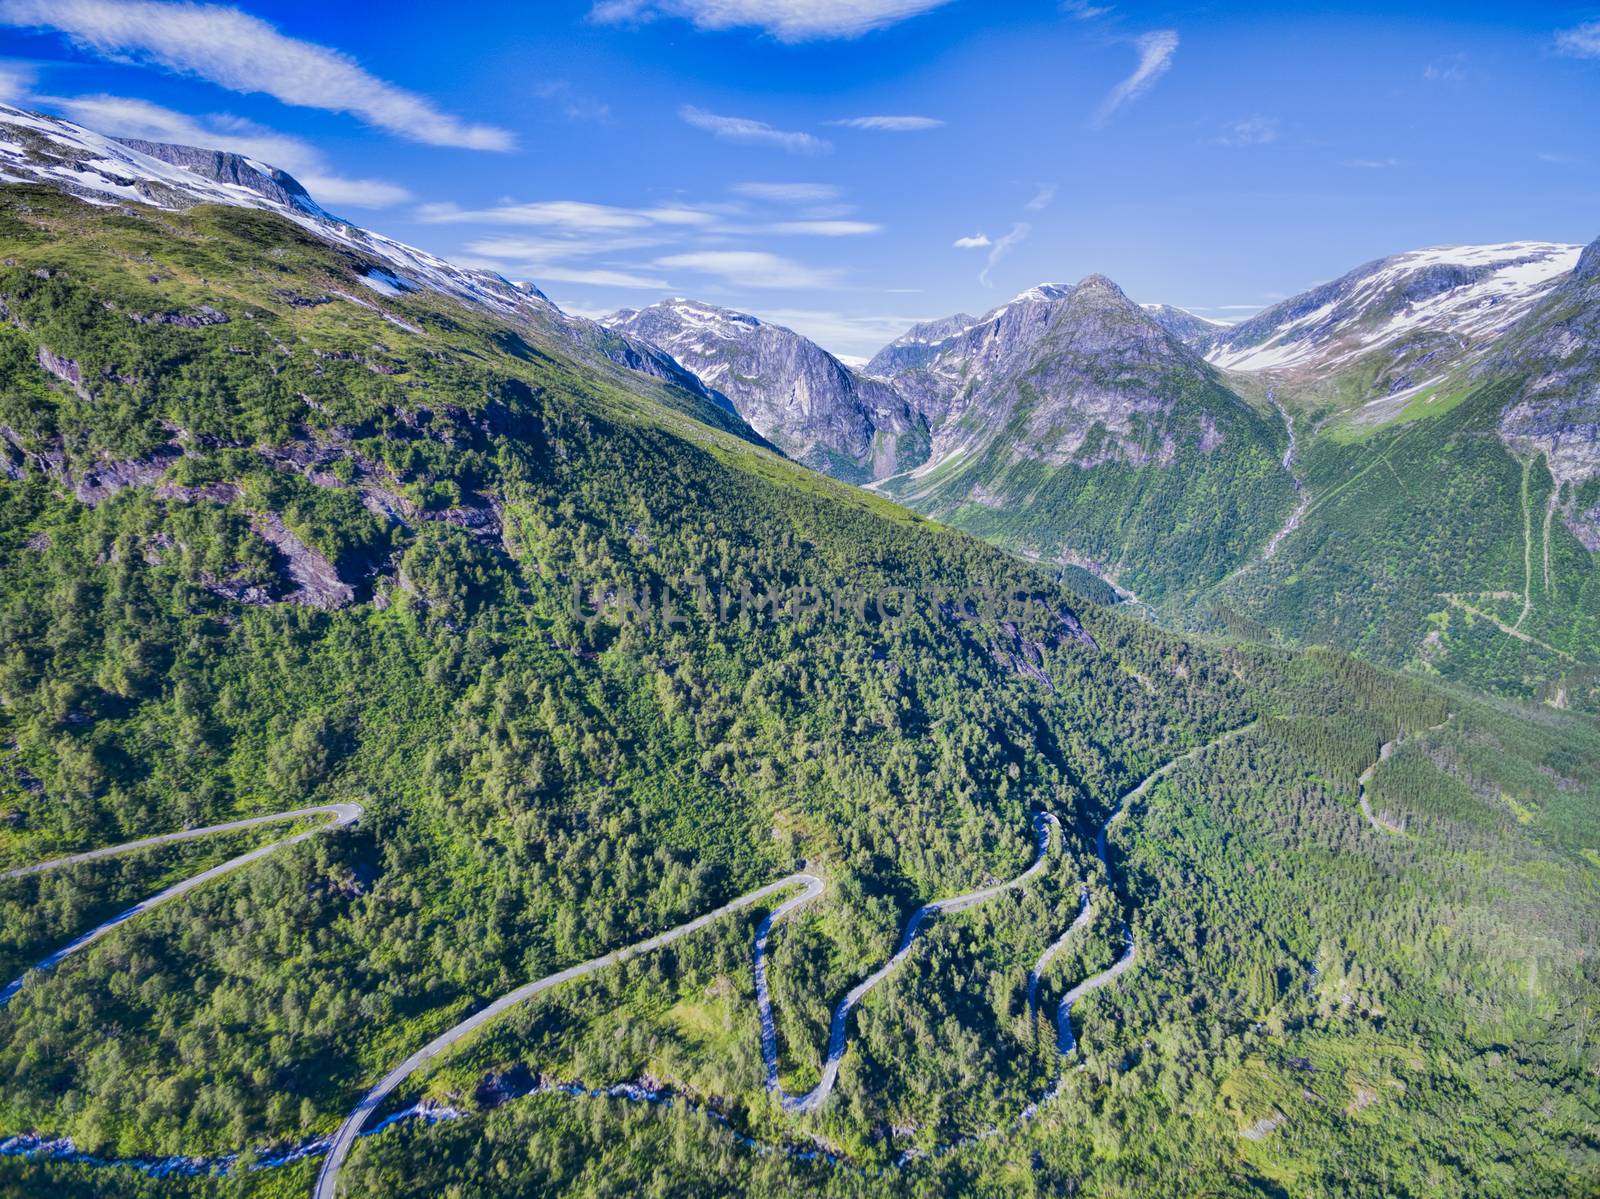 Gaularfjellet mountain pass by Harvepino